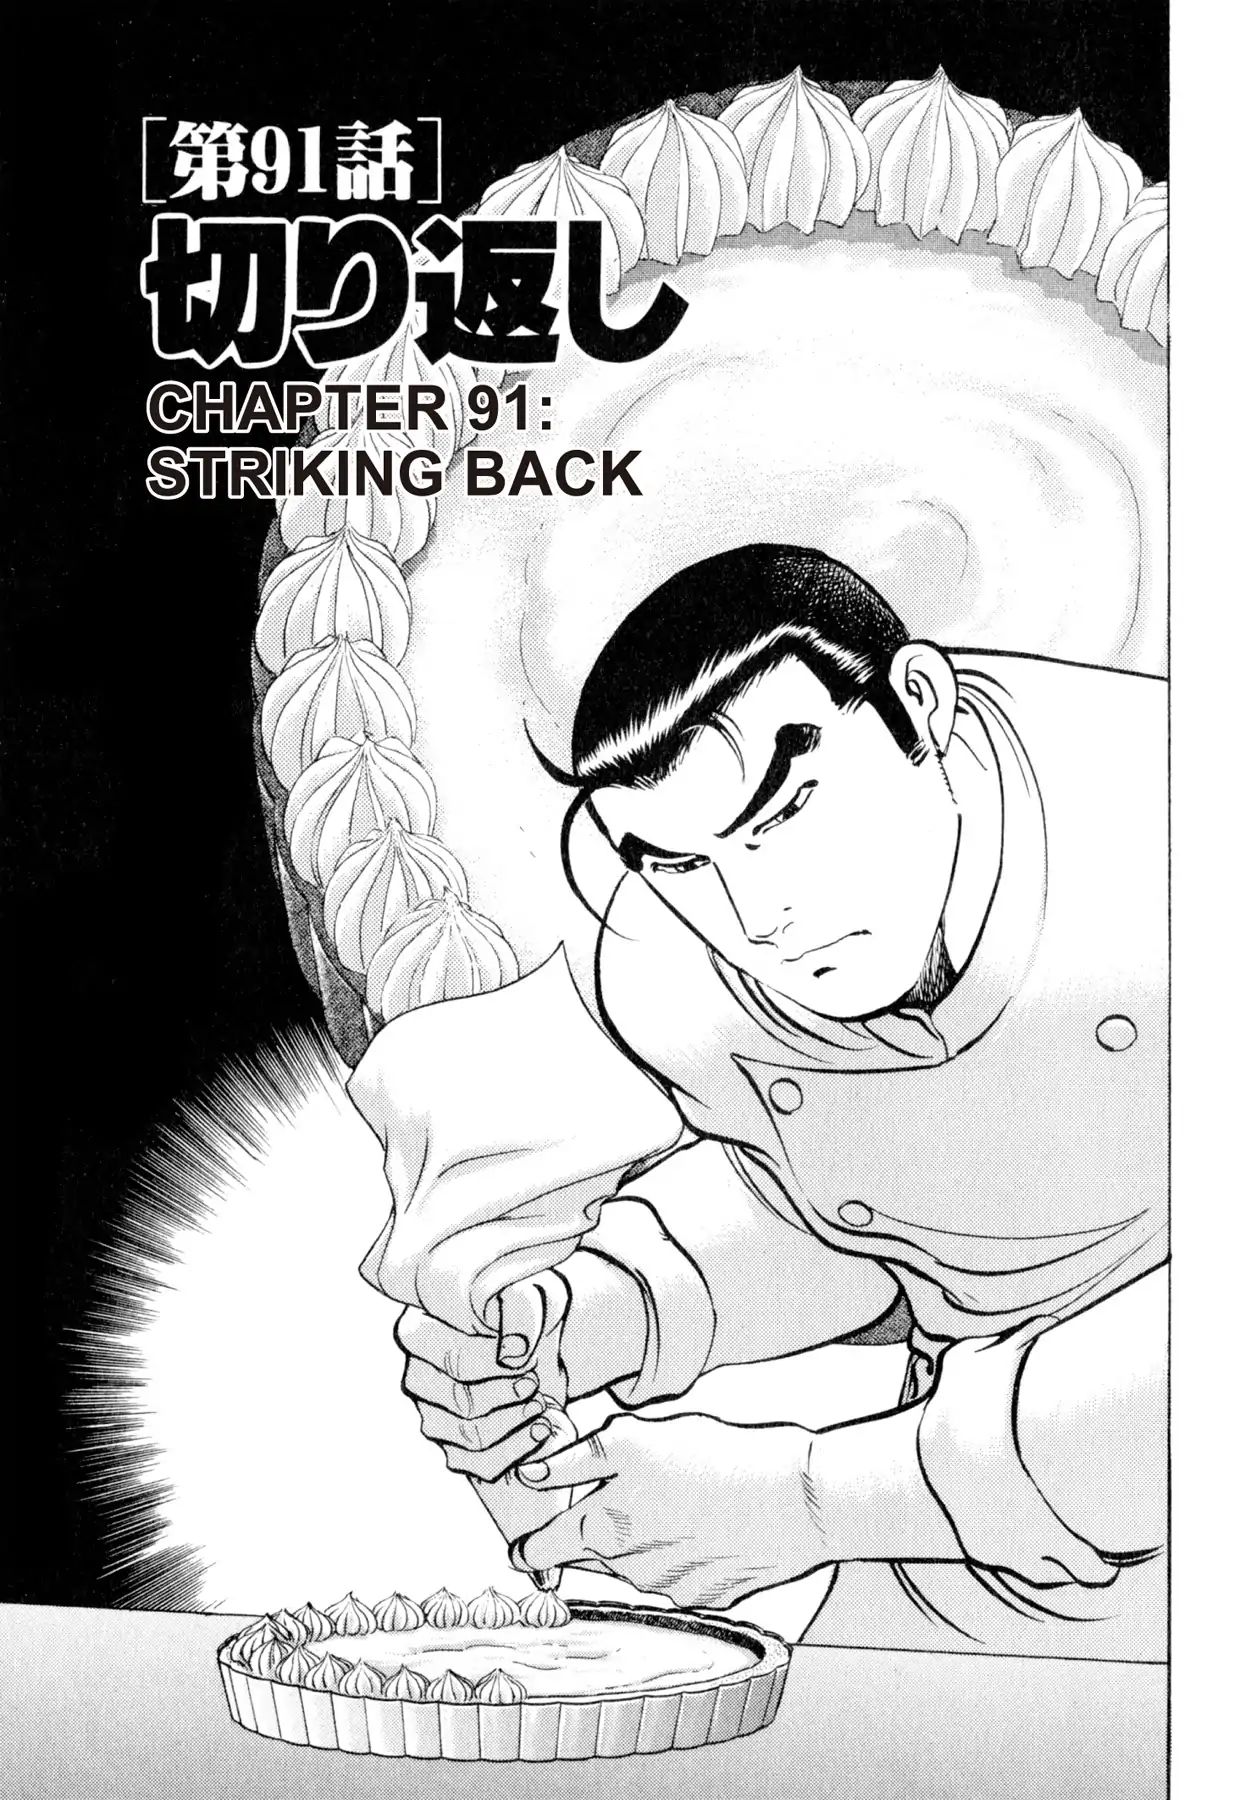 Shoku King VOL.11 CHAPTER 91: STRIKING BACK